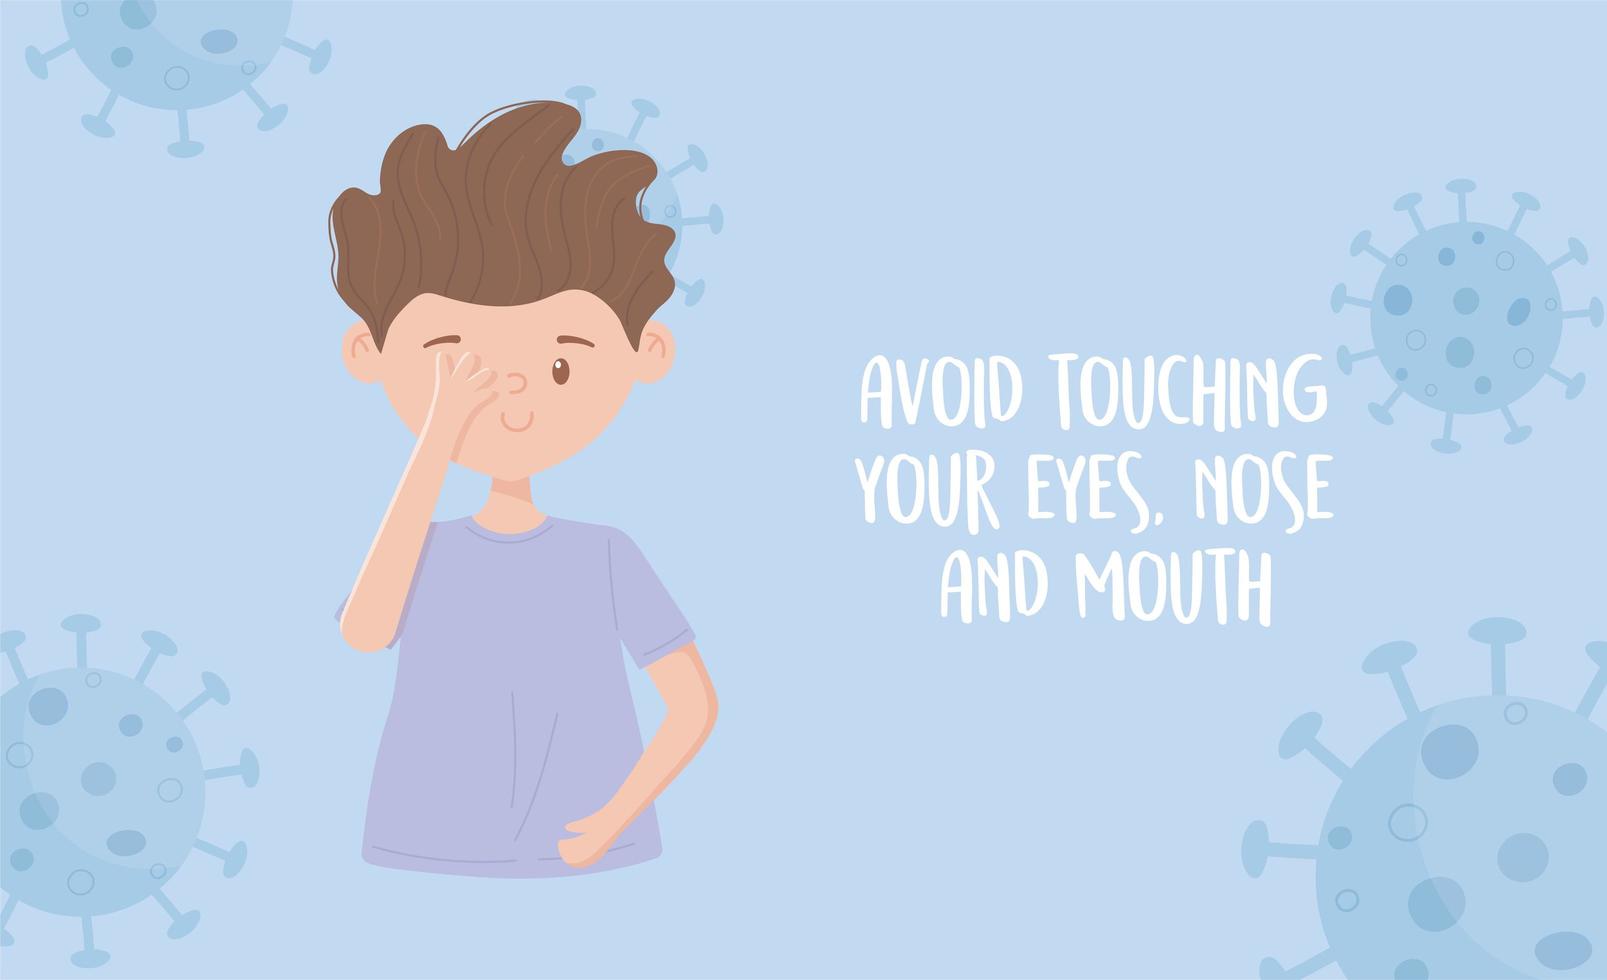 Prevenir a pandemia 19, evite tocar os olhos, nariz e boca vetor